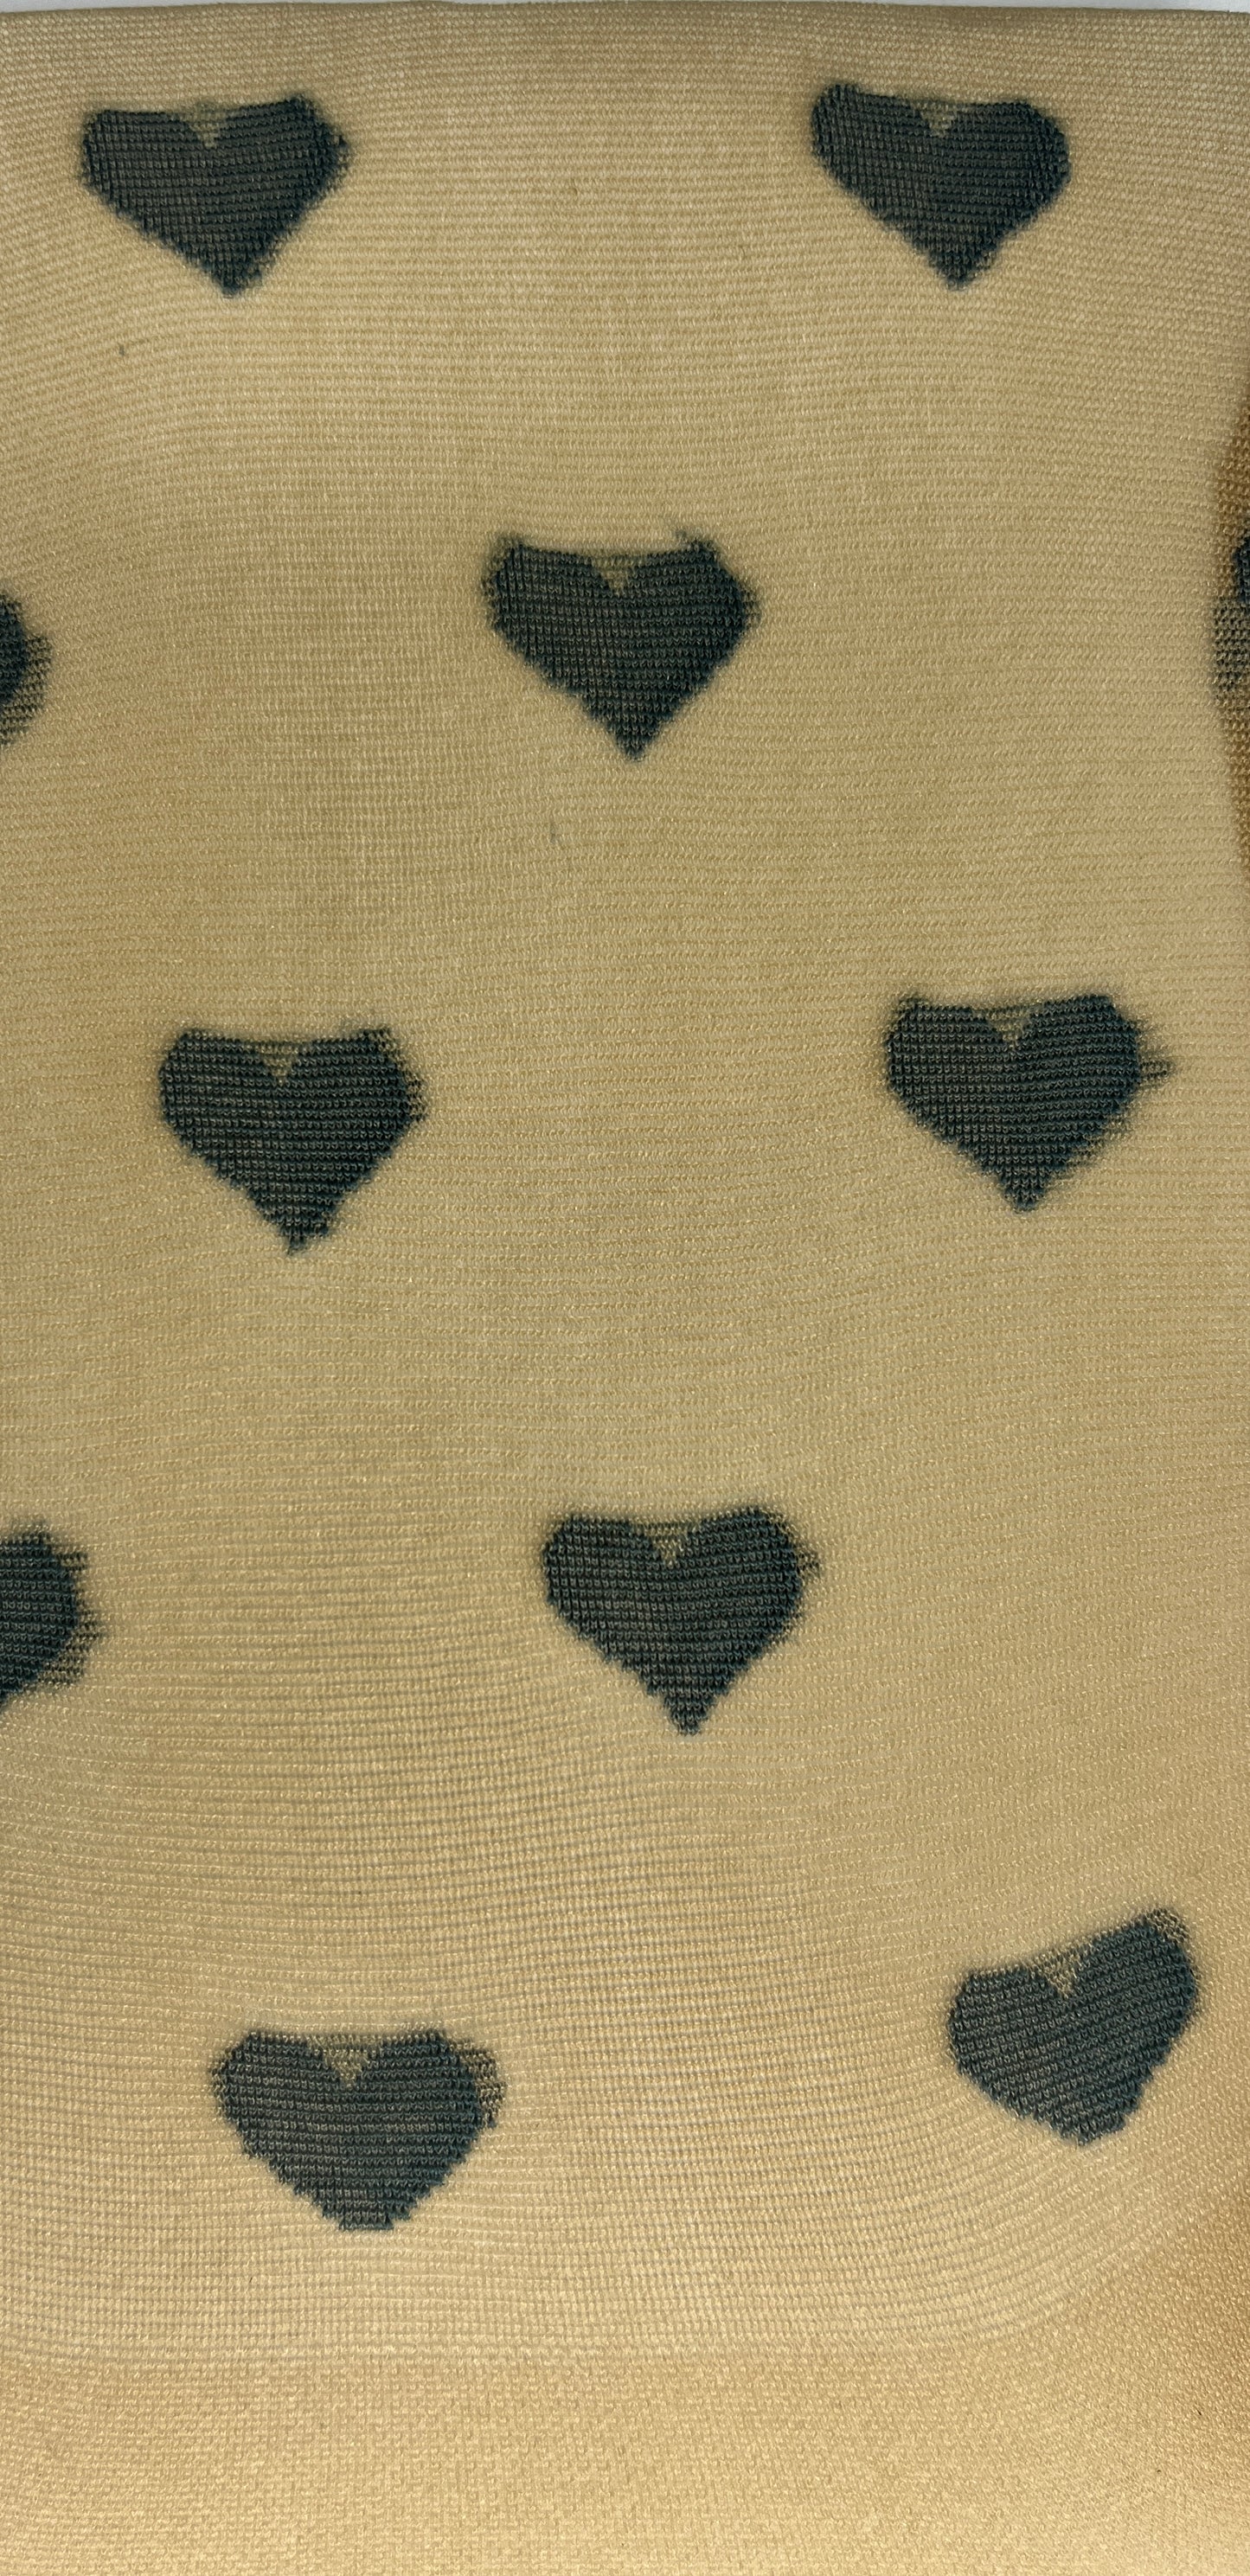 Pretty Stockings Heart Pattern Nude, Black SKU 000436